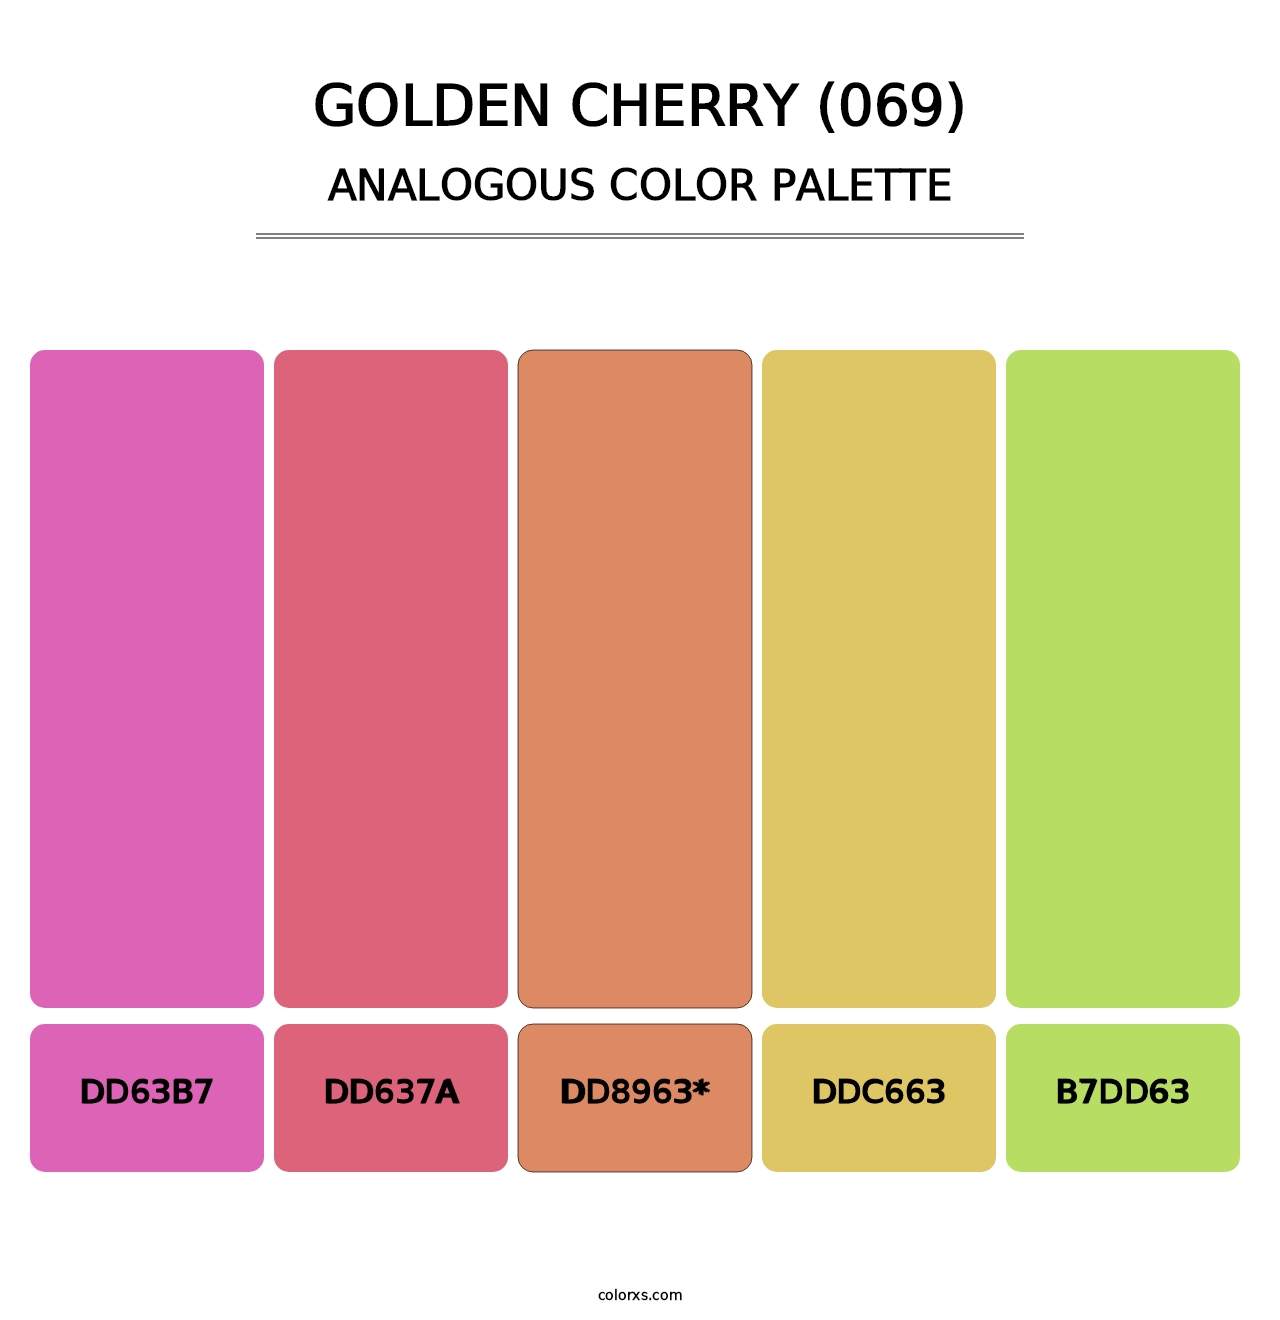 Golden Cherry (069) - Analogous Color Palette